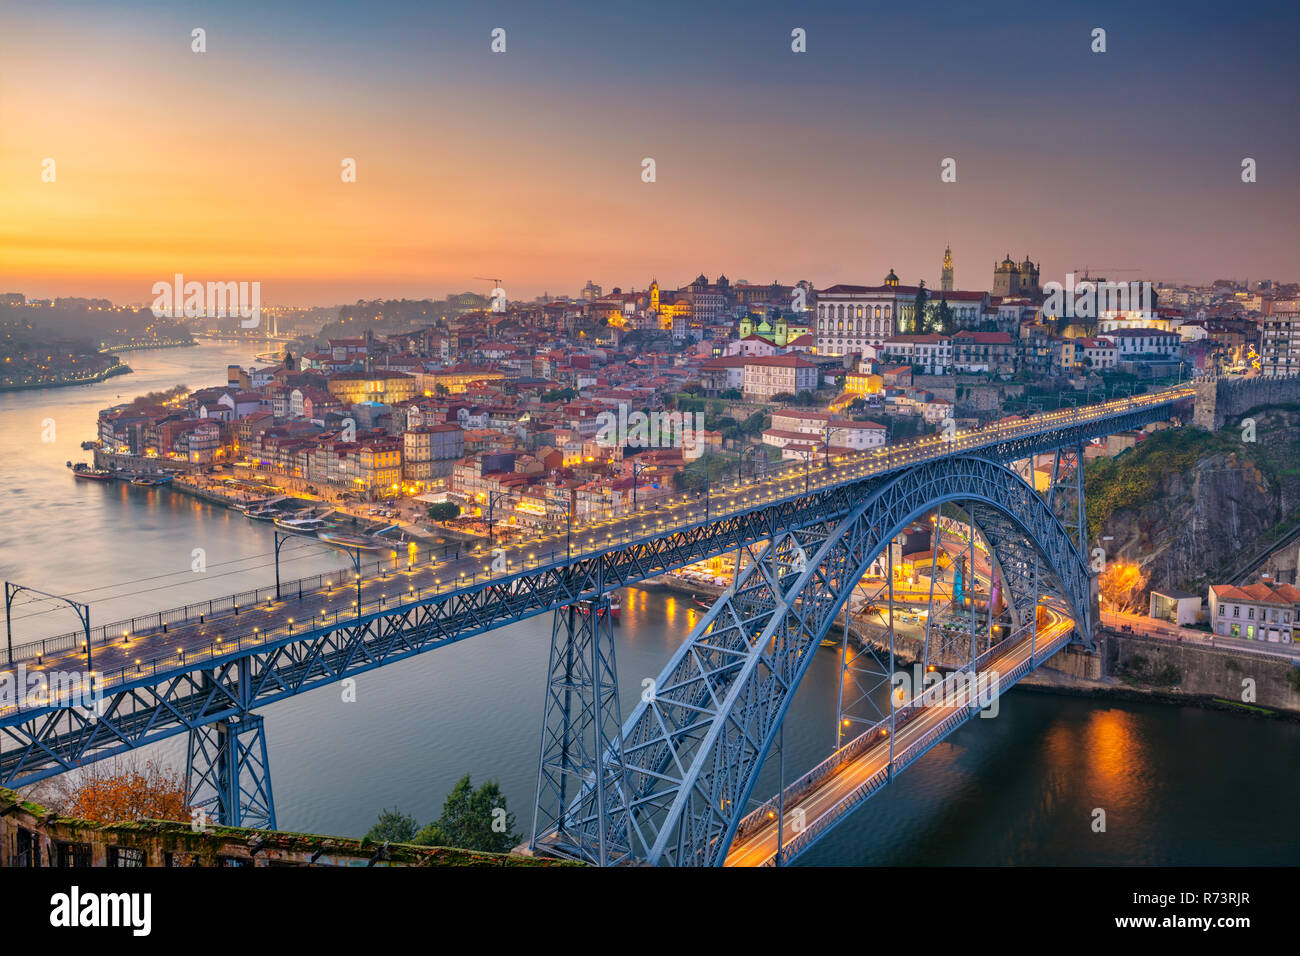 Porto, Portogallo. Immagine di panorama urbano di Porto, Portogallo con il famoso Ponte di Luis e il fiume Douro durante il tramonto. Foto Stock